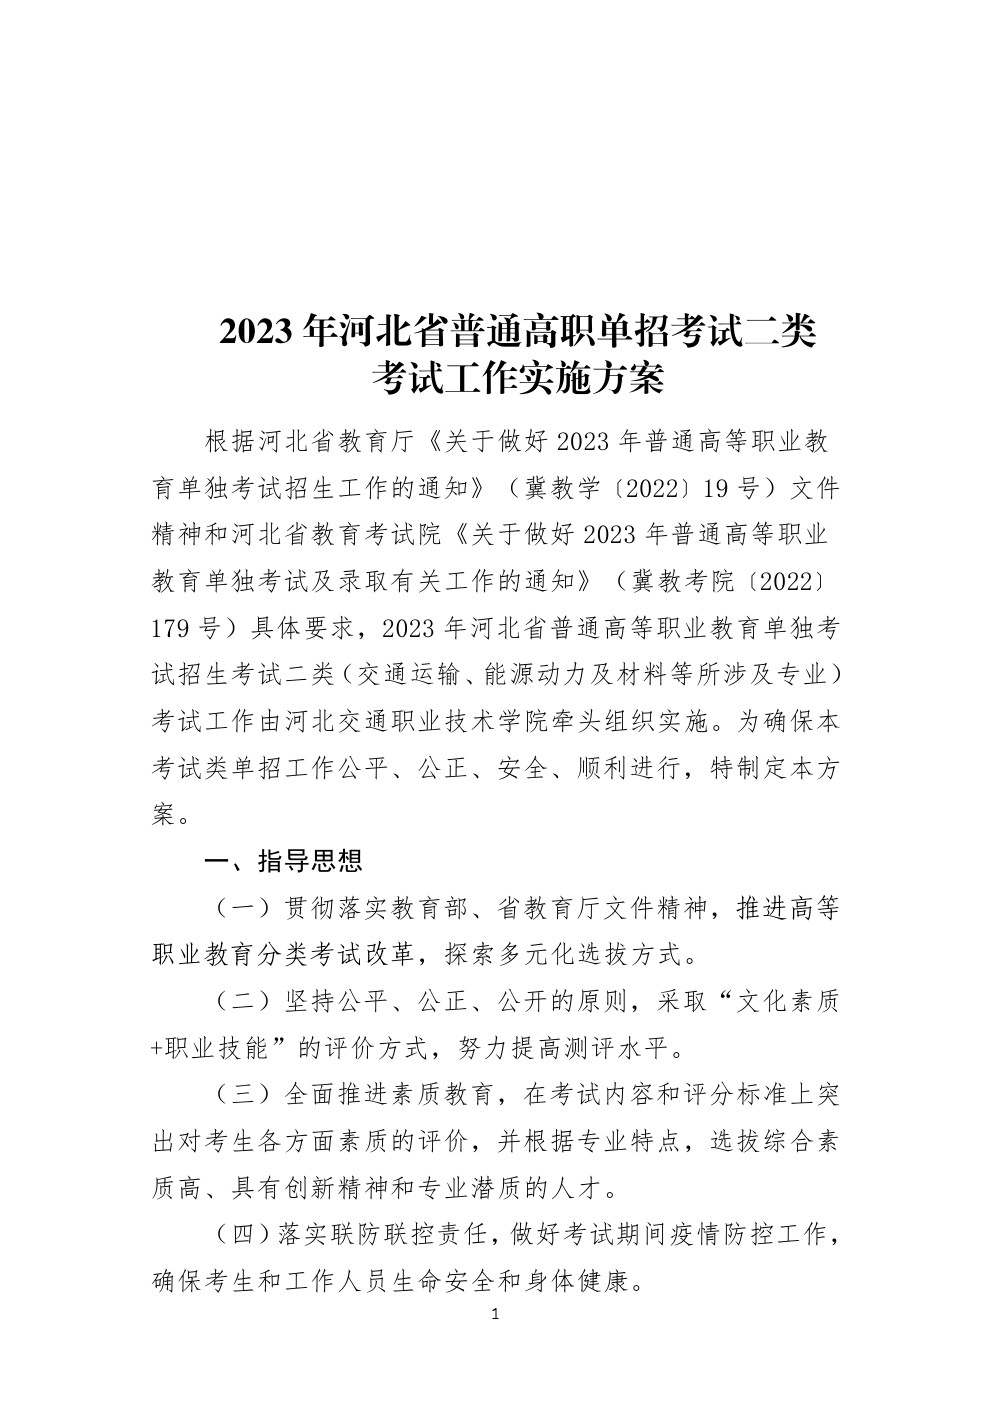 2023年河北省高职单招考试二类考试工作实施方案 